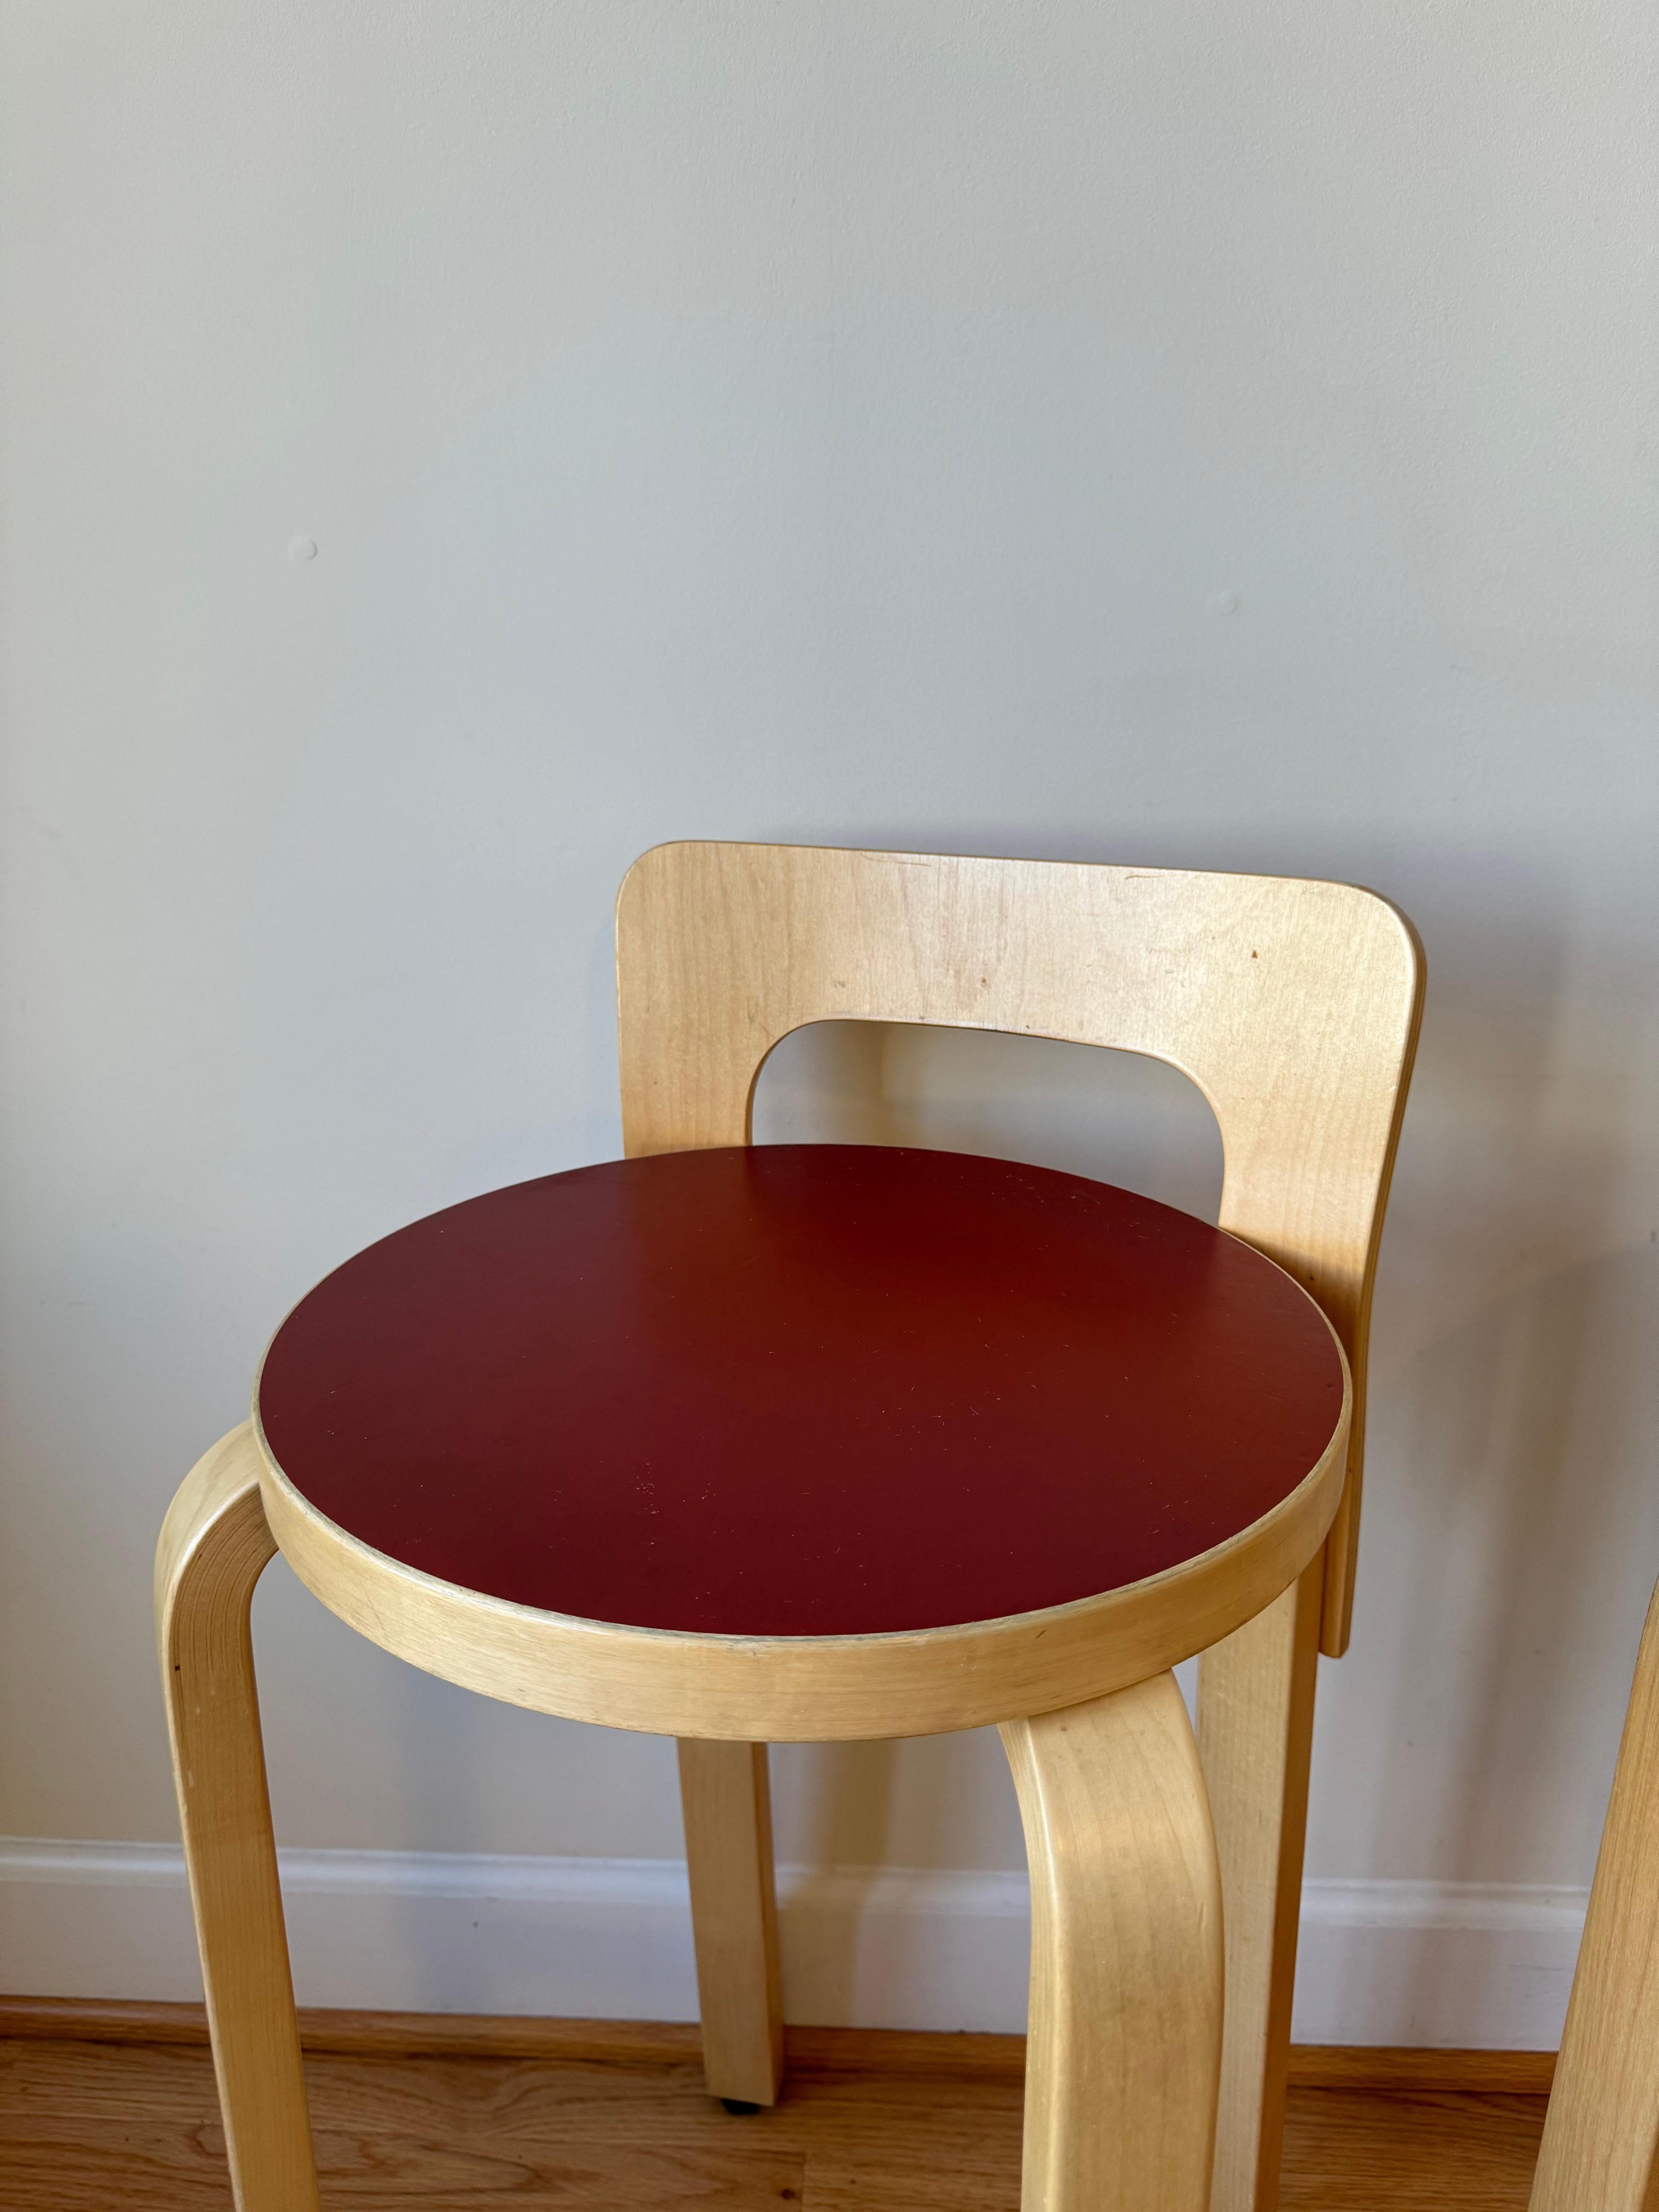 High Chair K65 von Alvar Aalto für Artek (Sitz aus rotem Linoleum) 1